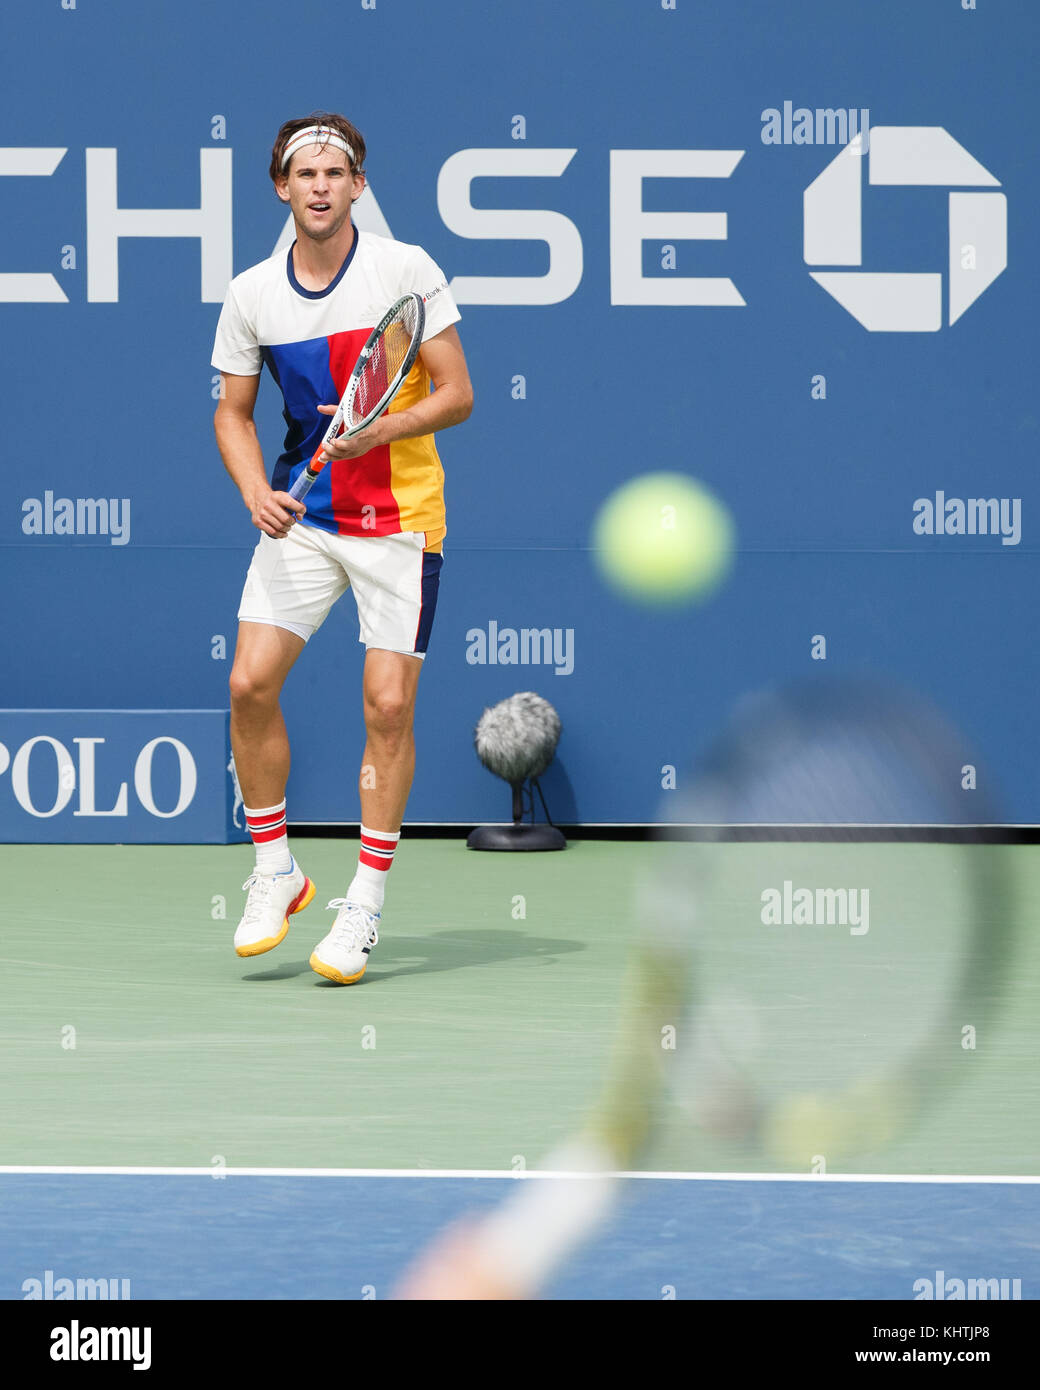 Tenista austriaco dominic thiem (Aut) esperando para servir en el US Open 2017 Campeonato de tenis, la ciudad de Nueva York, Estado de Nueva York, Estados Unidos. Foto de stock